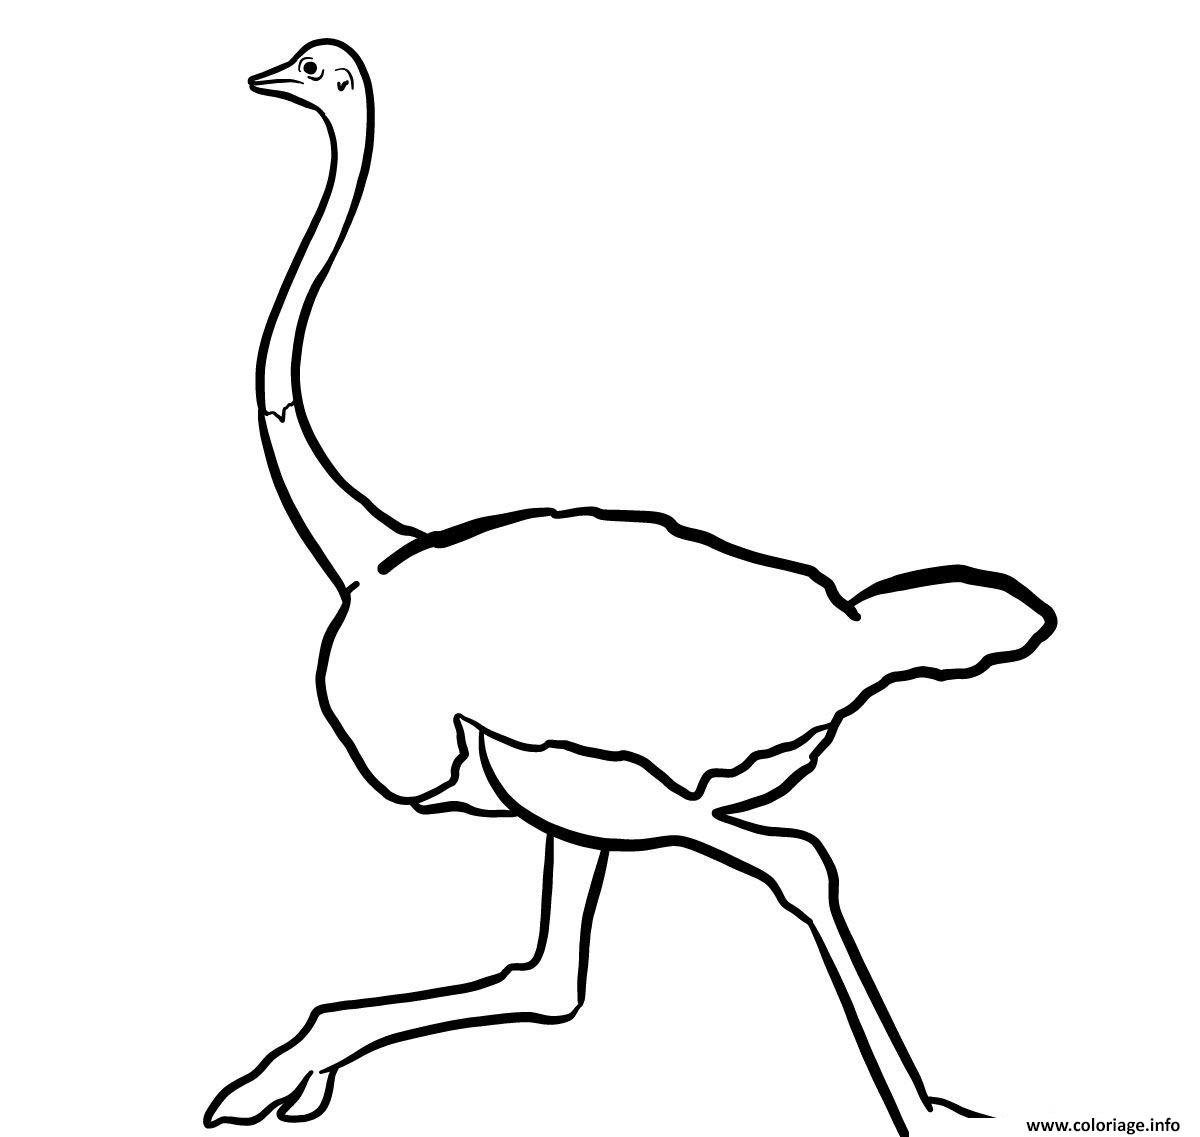 Dessin autruche afrique sauvage le plus grand de tous les oiseaux Coloriage Gratuit à Imprimer